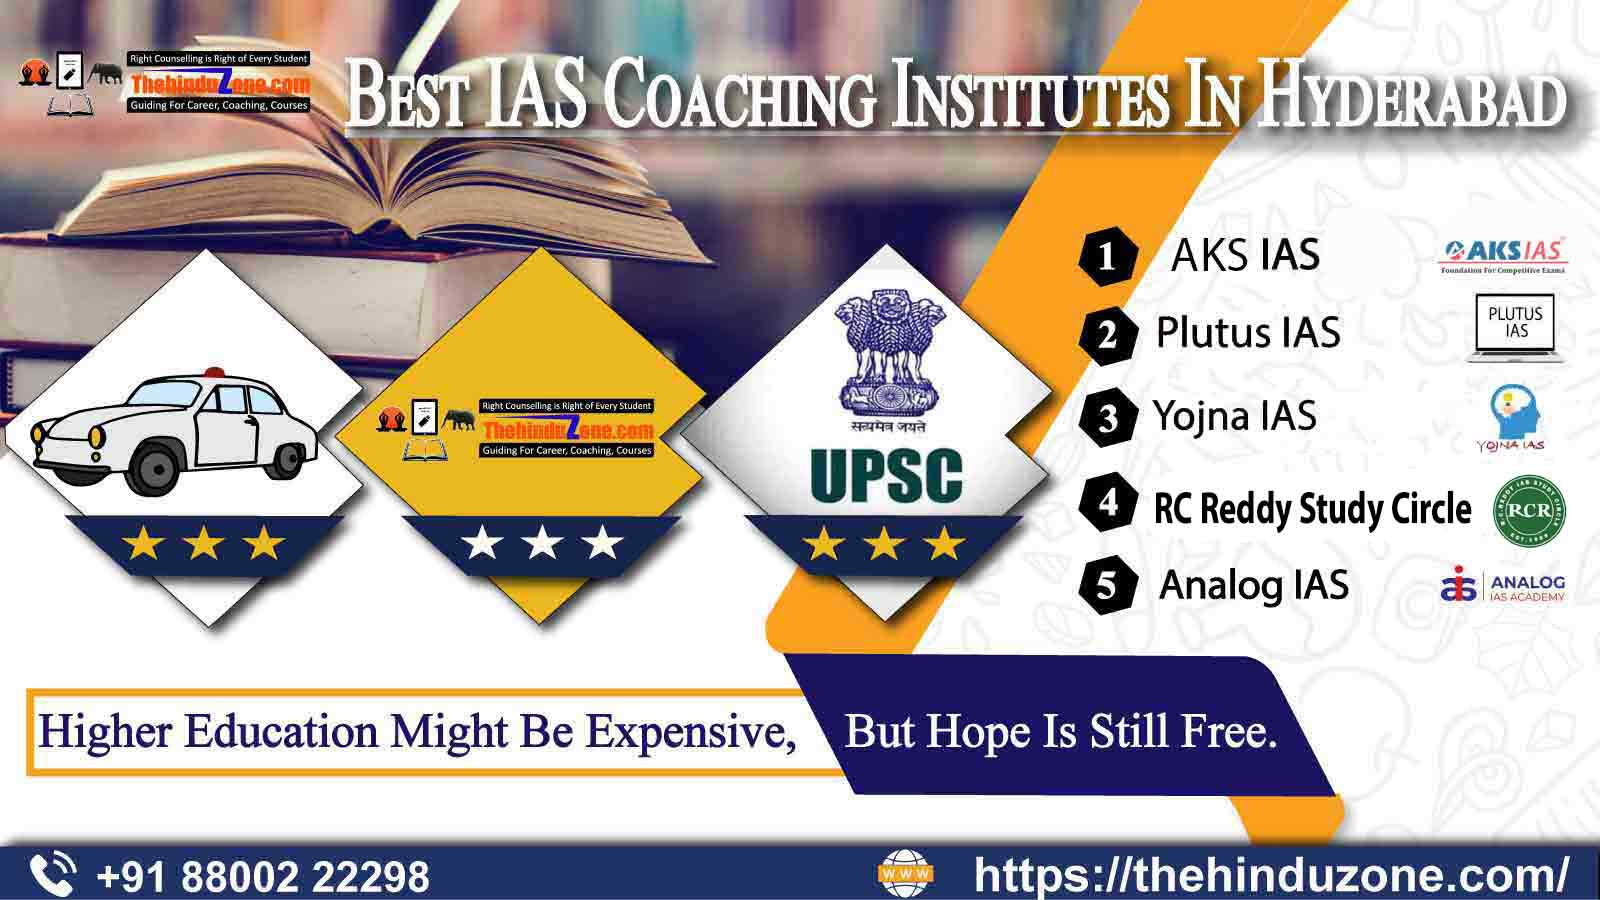 Top 10 IAS Coaching Institutes In Hyderabad